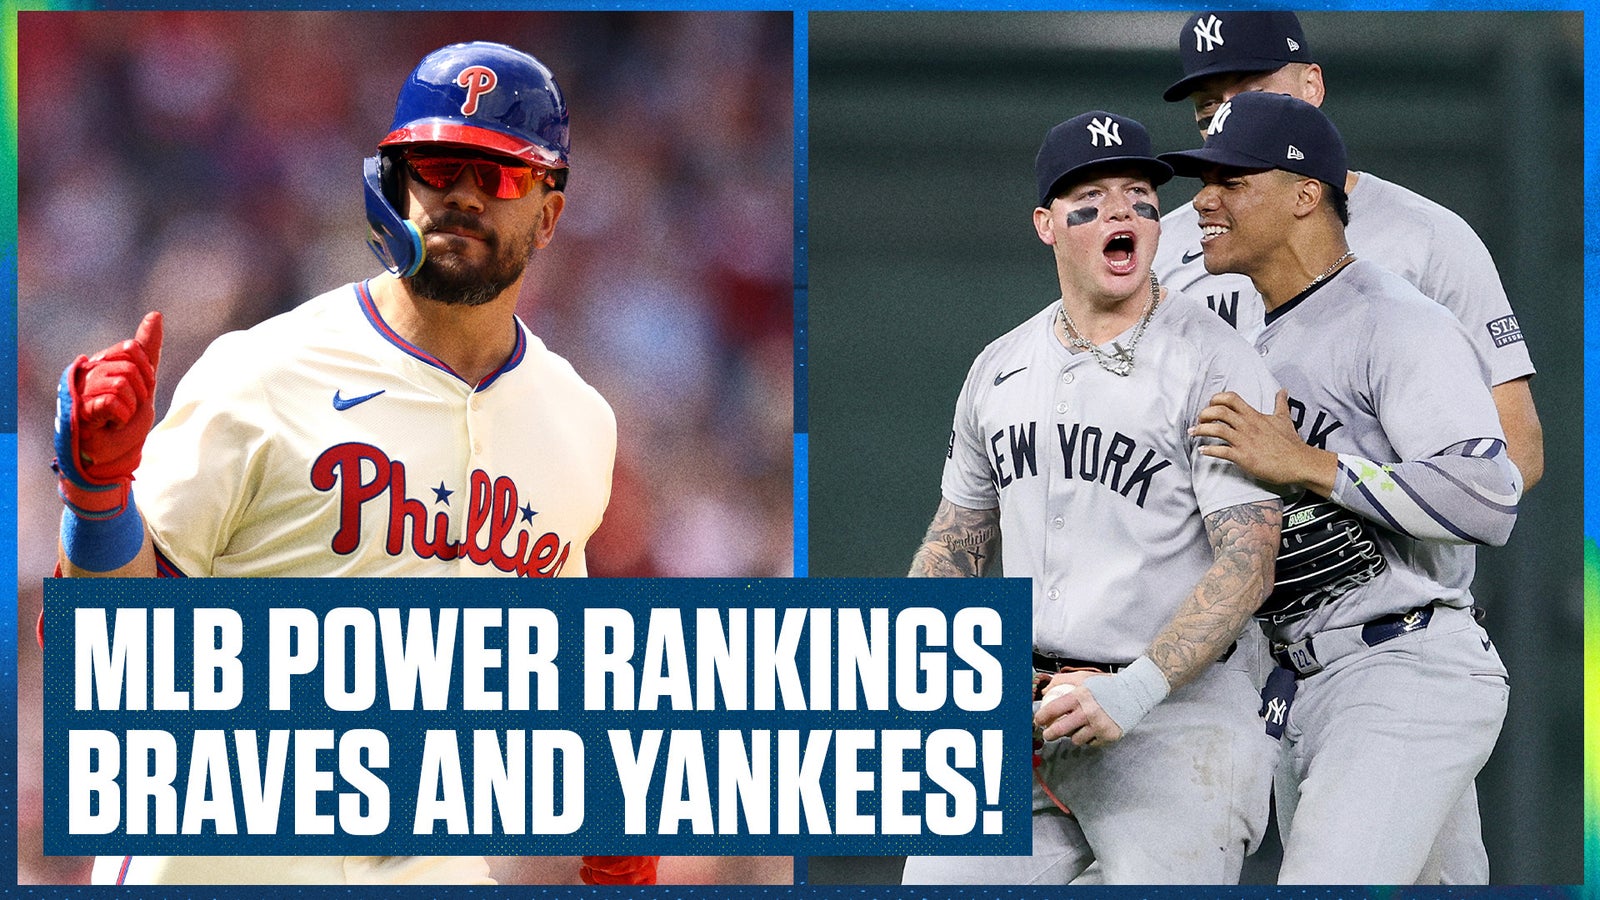 Braves lead MLB Power Rankings after Week 1